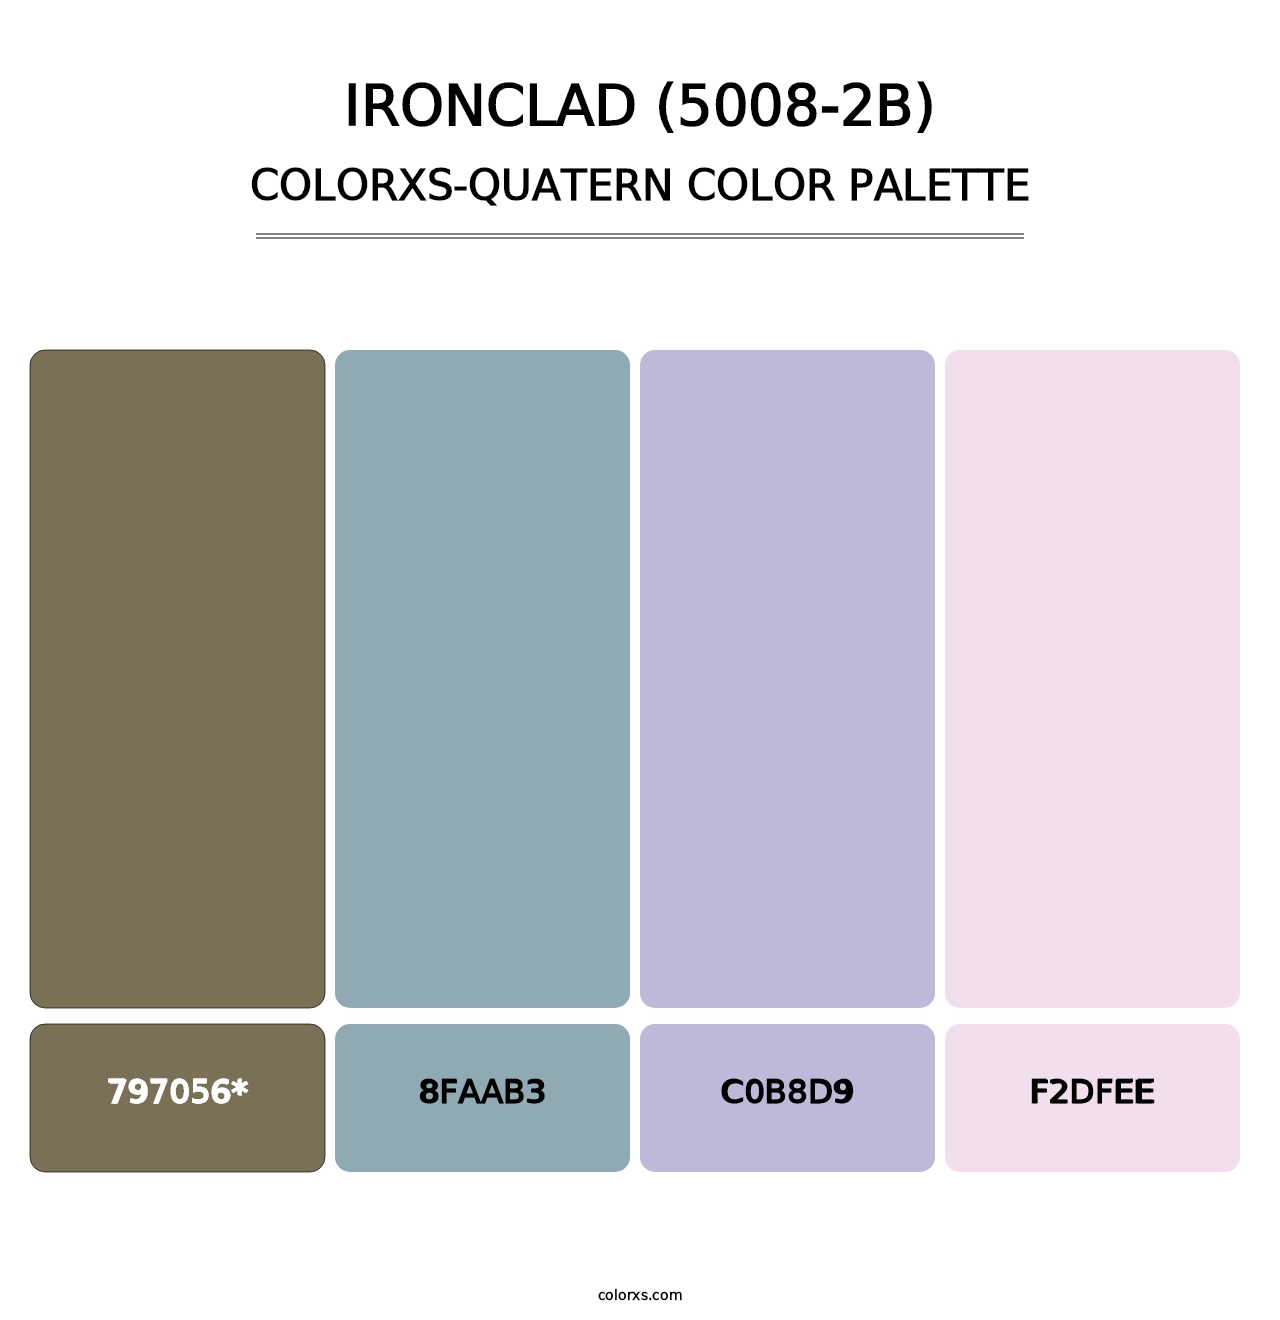 Ironclad (5008-2B) - Colorxs Quatern Palette